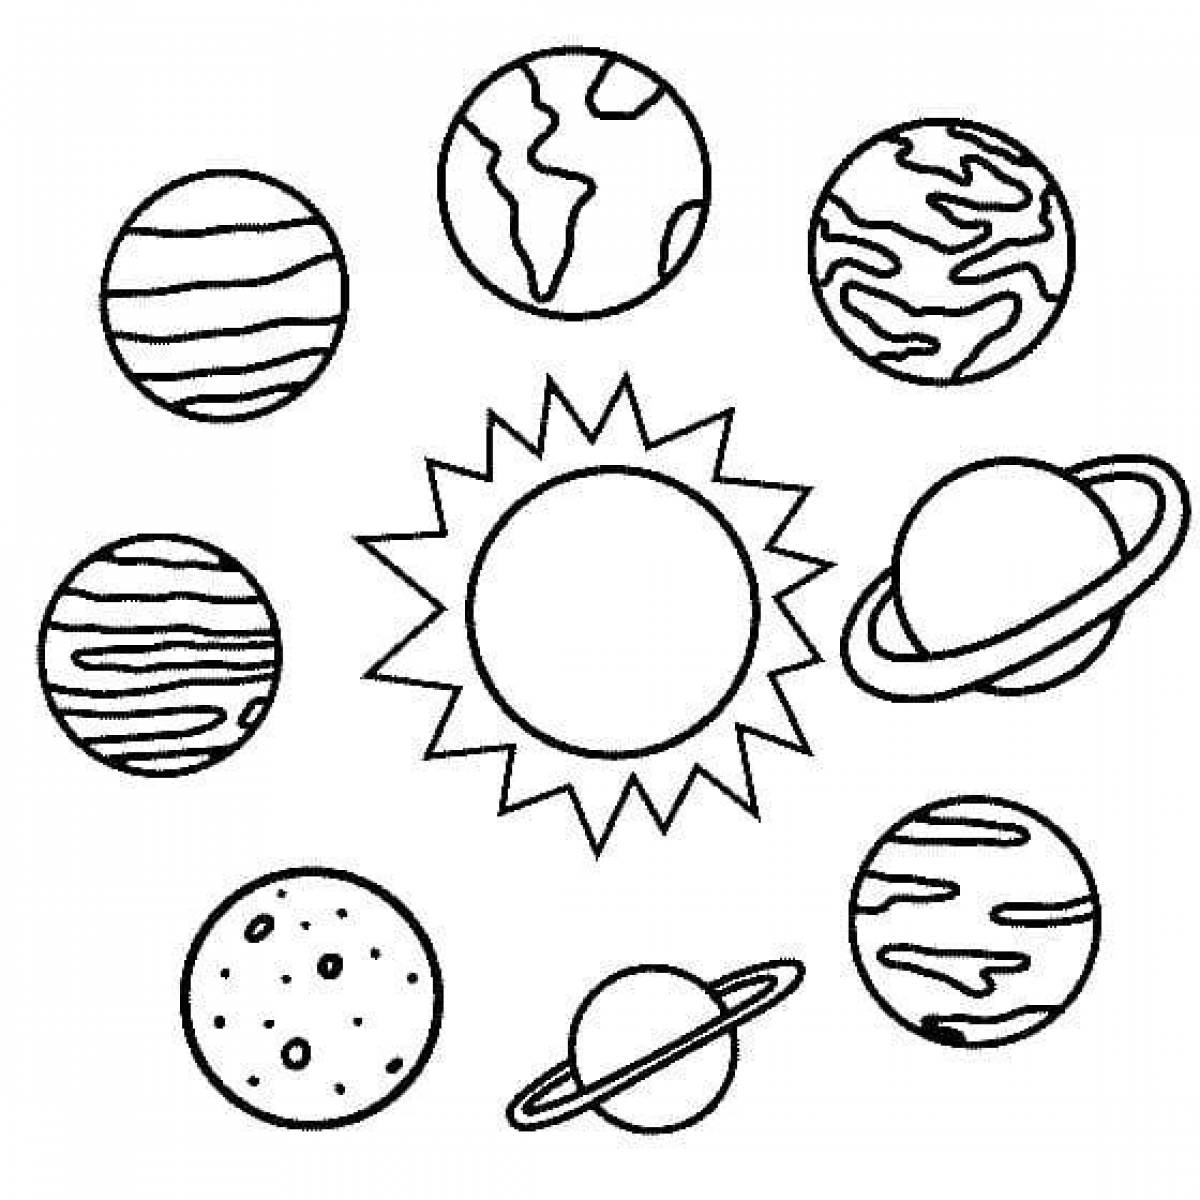 Картинки планеты солнечной системы для детей распечатать. Раскраска планеты солнечной системы для детей. Планеты солнечной системы раскраска. Солнечная система раскраска для детей. Планеты солнечной системы для разукрашивания.